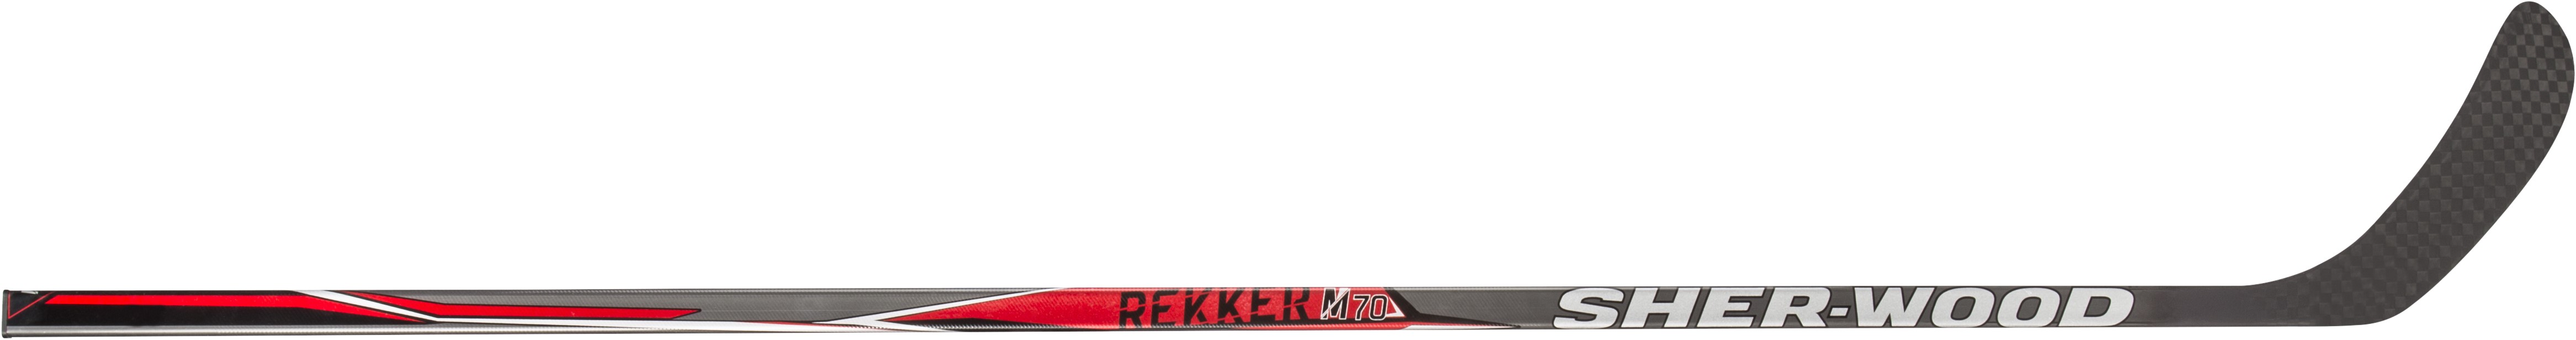 Клюшка SHER-WOOD REKKER M70 JR